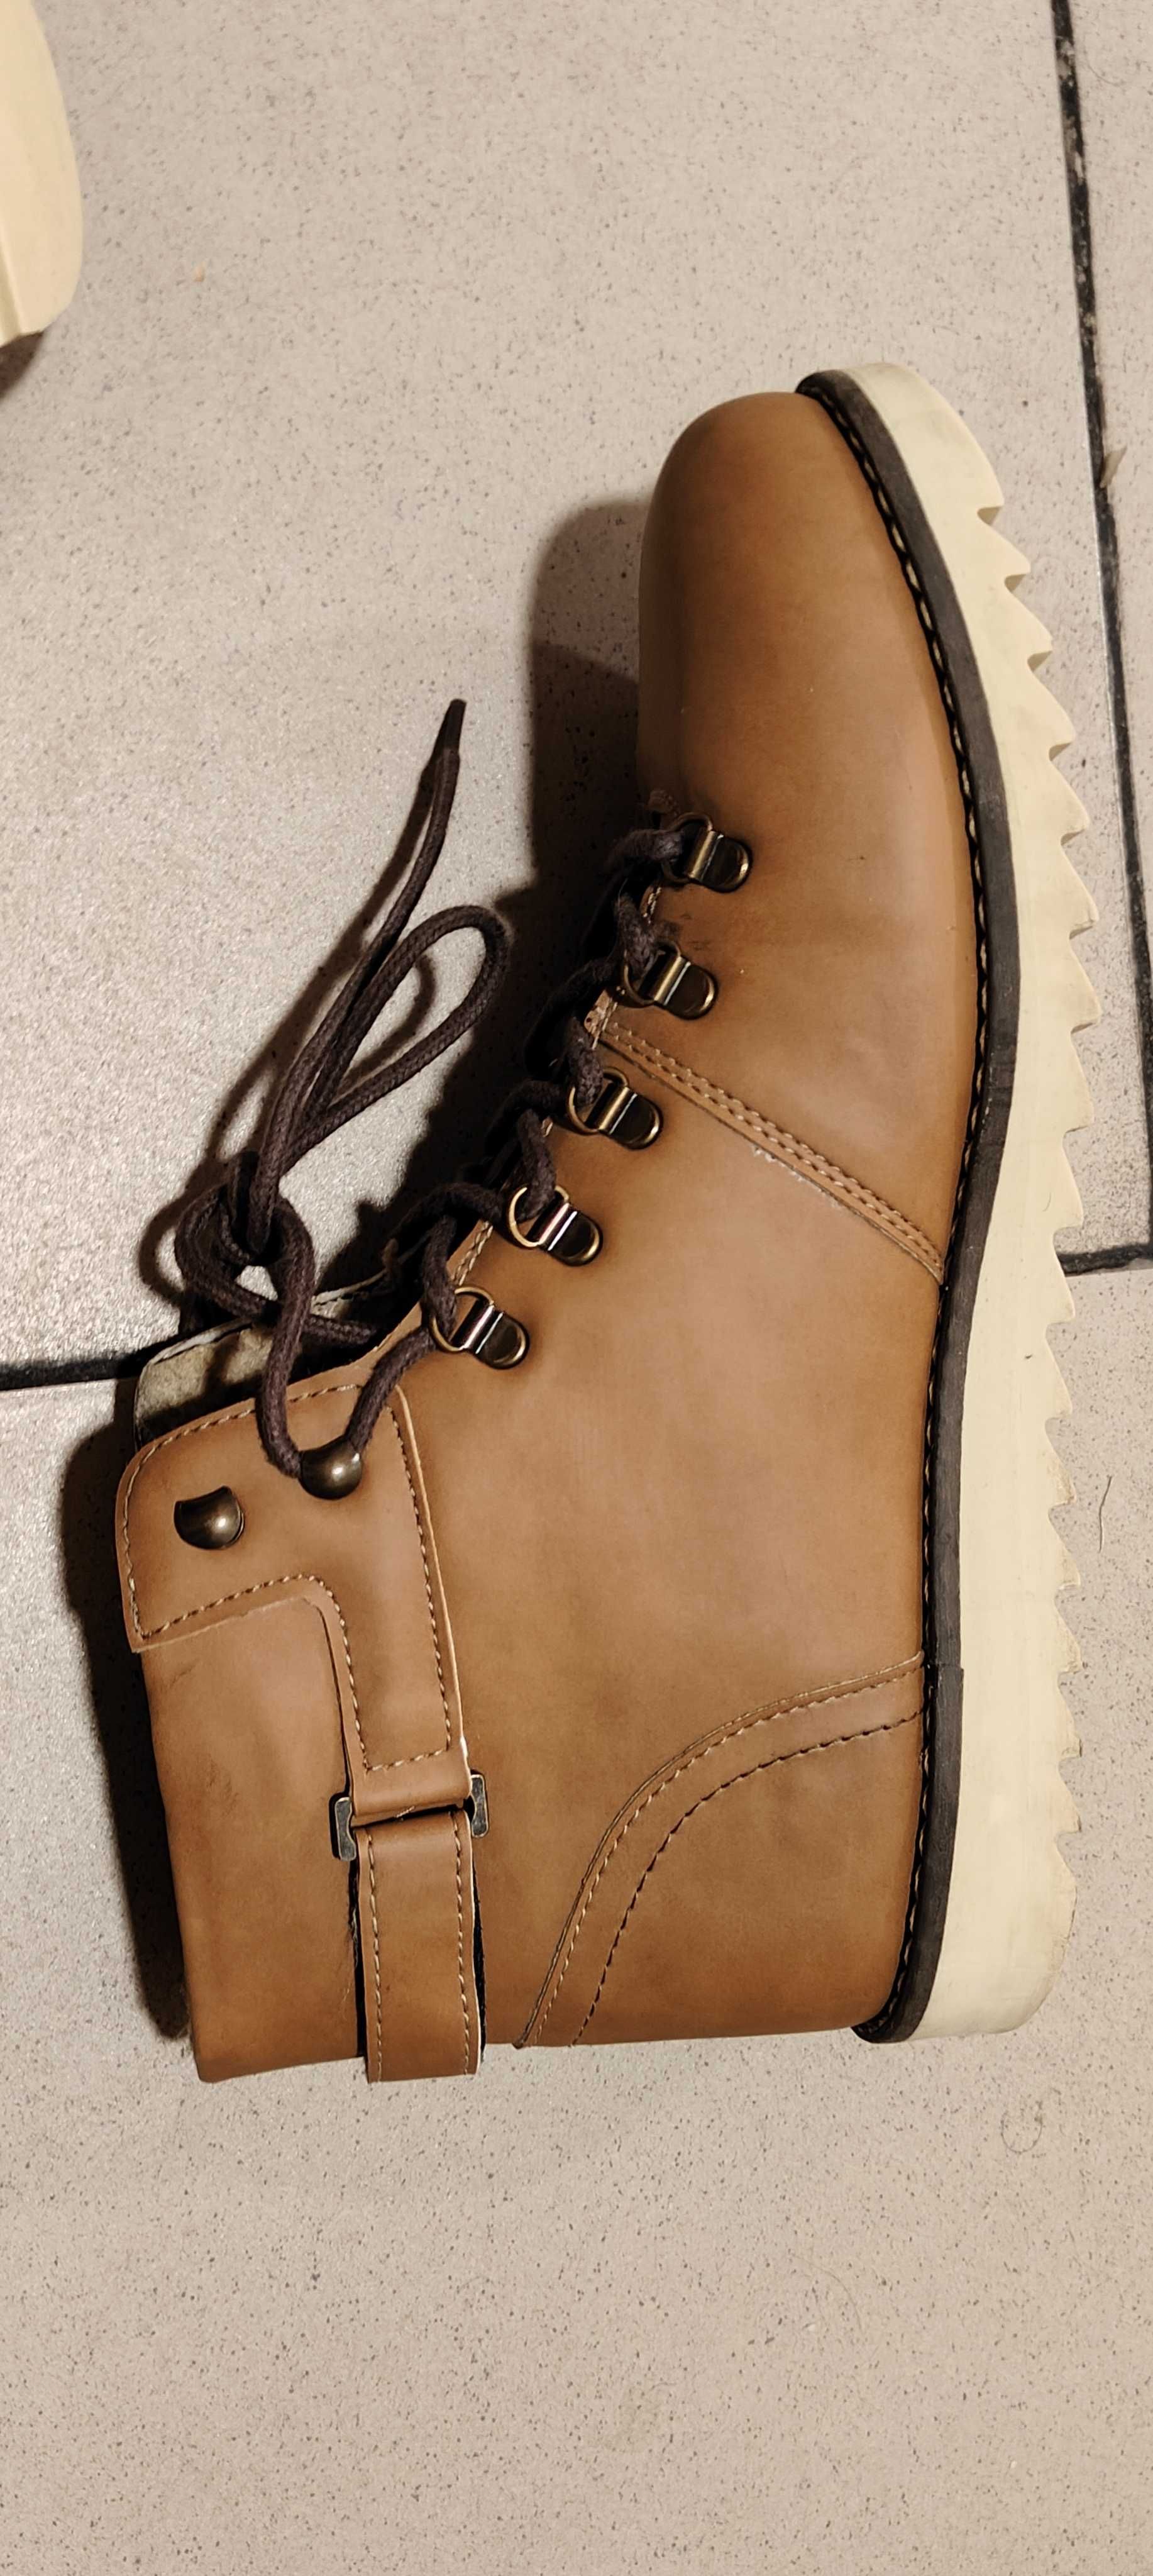 Снігові черевики коричневого кольору, 45 розмір